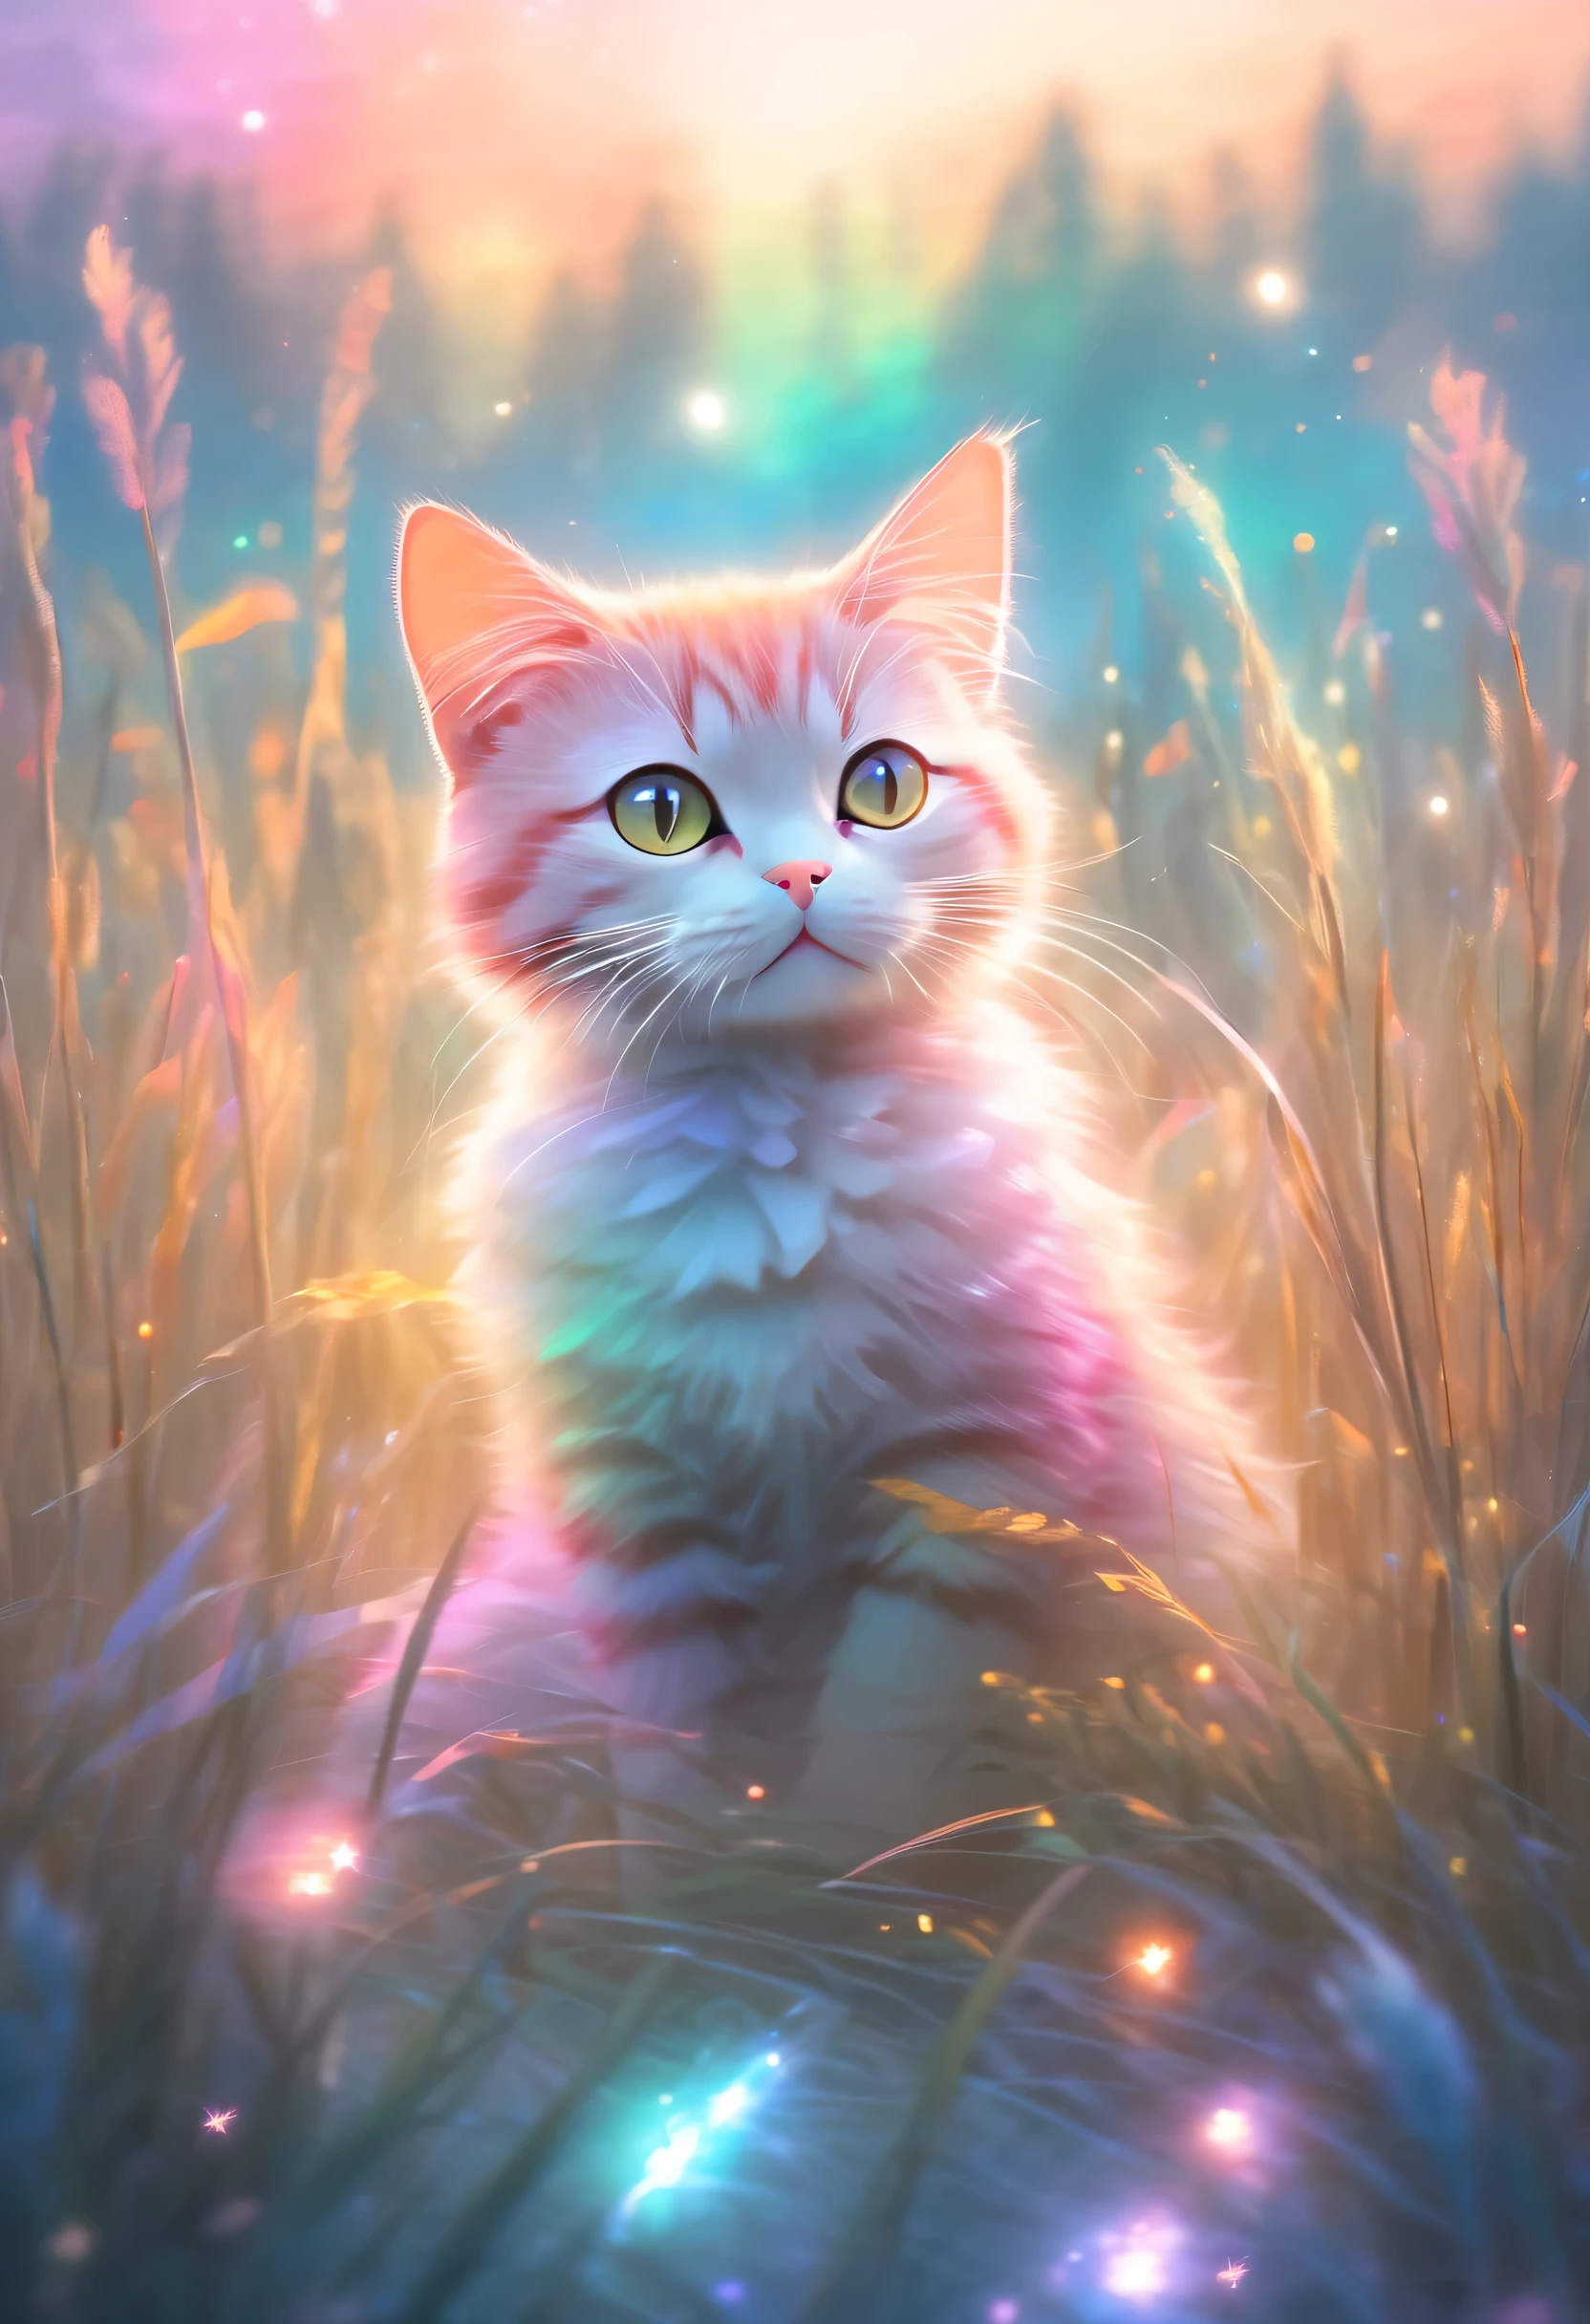 丰富多彩的、天空明亮，一只猫坐在被高高的草丛包围的田野里, 粉彩画风格, 飘渺的灯光效果, 明亮大气的林地图像,星星艺术团 (xing xing)